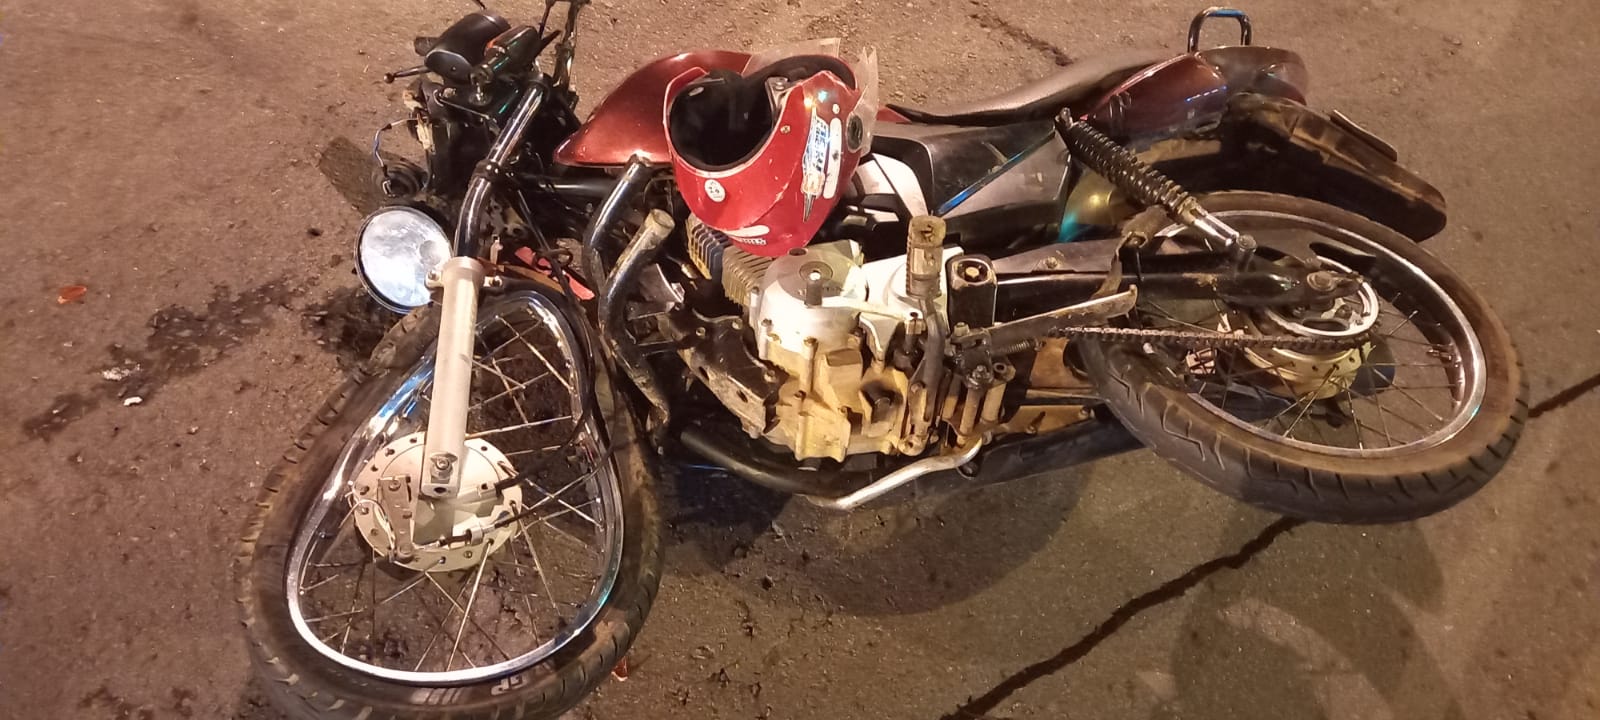 Vídeo: motociclista e garupa ficam gravemente feridos após acidente em avenida de Goiânia